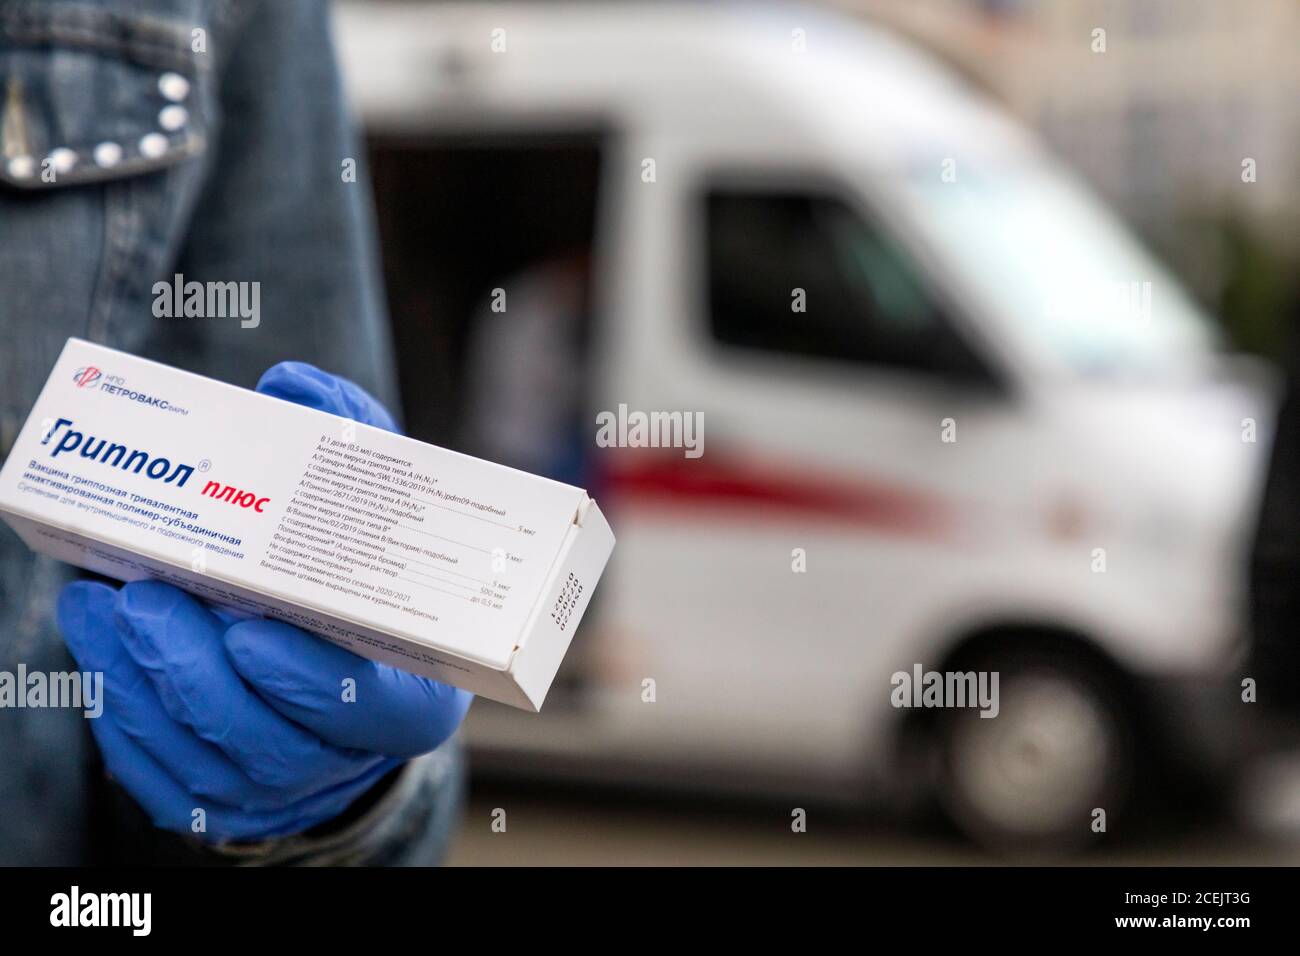 Mosca, Russia. 1 settembre 2020 UN volontario tiene una scatola del vaccino trivalente Grippol Plus di fronte ad una speciale auto ambulanza del servizio di vaccinazione antinfluenzale mobile gratuito in via Tverskaya vicino alla stazione della metropolitana nel centro di Mosca, Russia Foto Stock